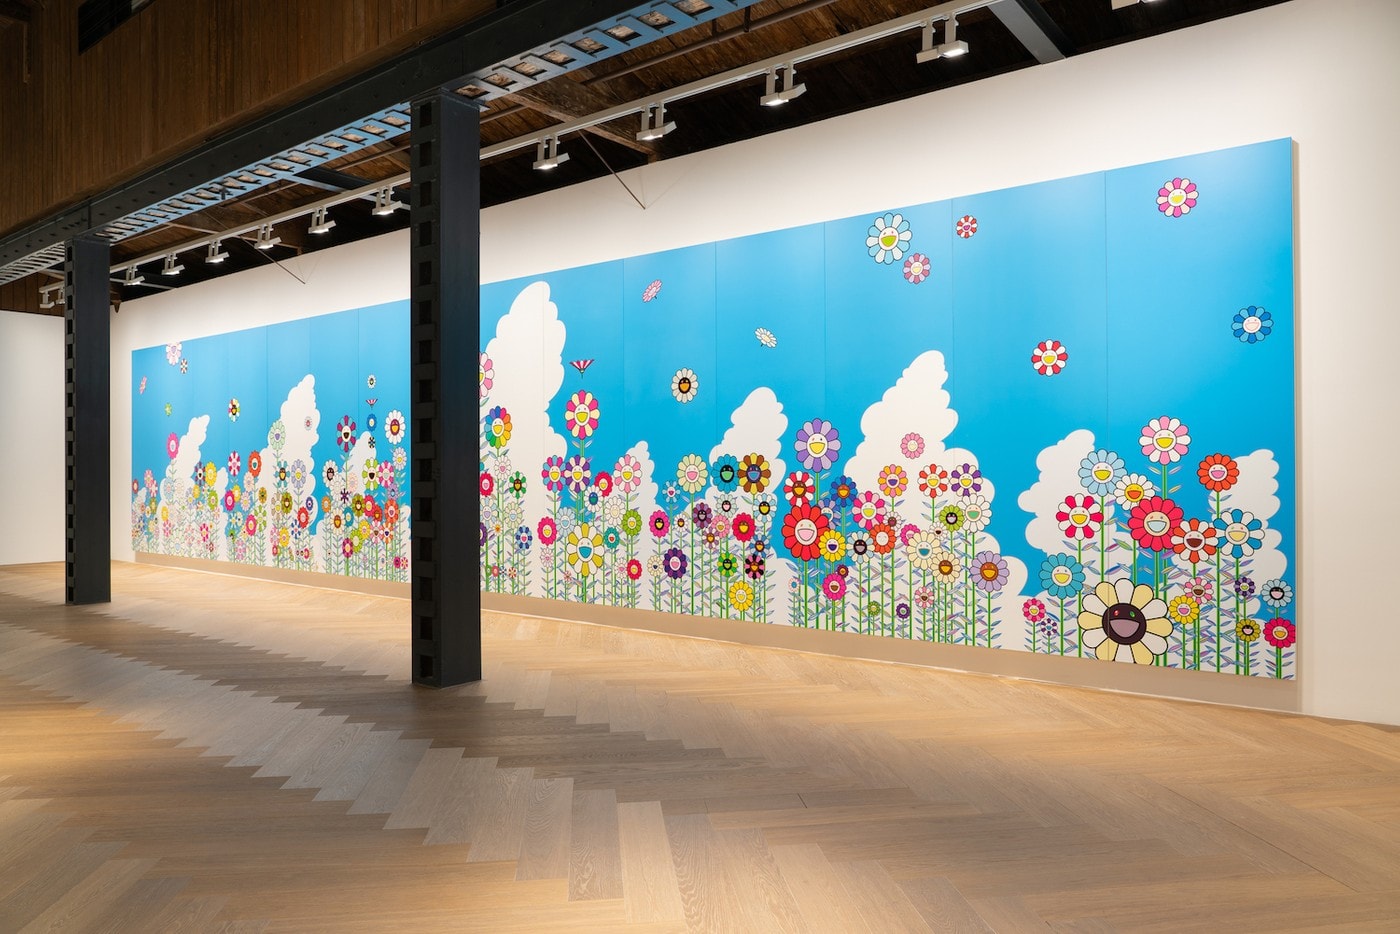 村上隆 Takashi Murakami 攜手多位藝術家策劃集體展覽正式開催